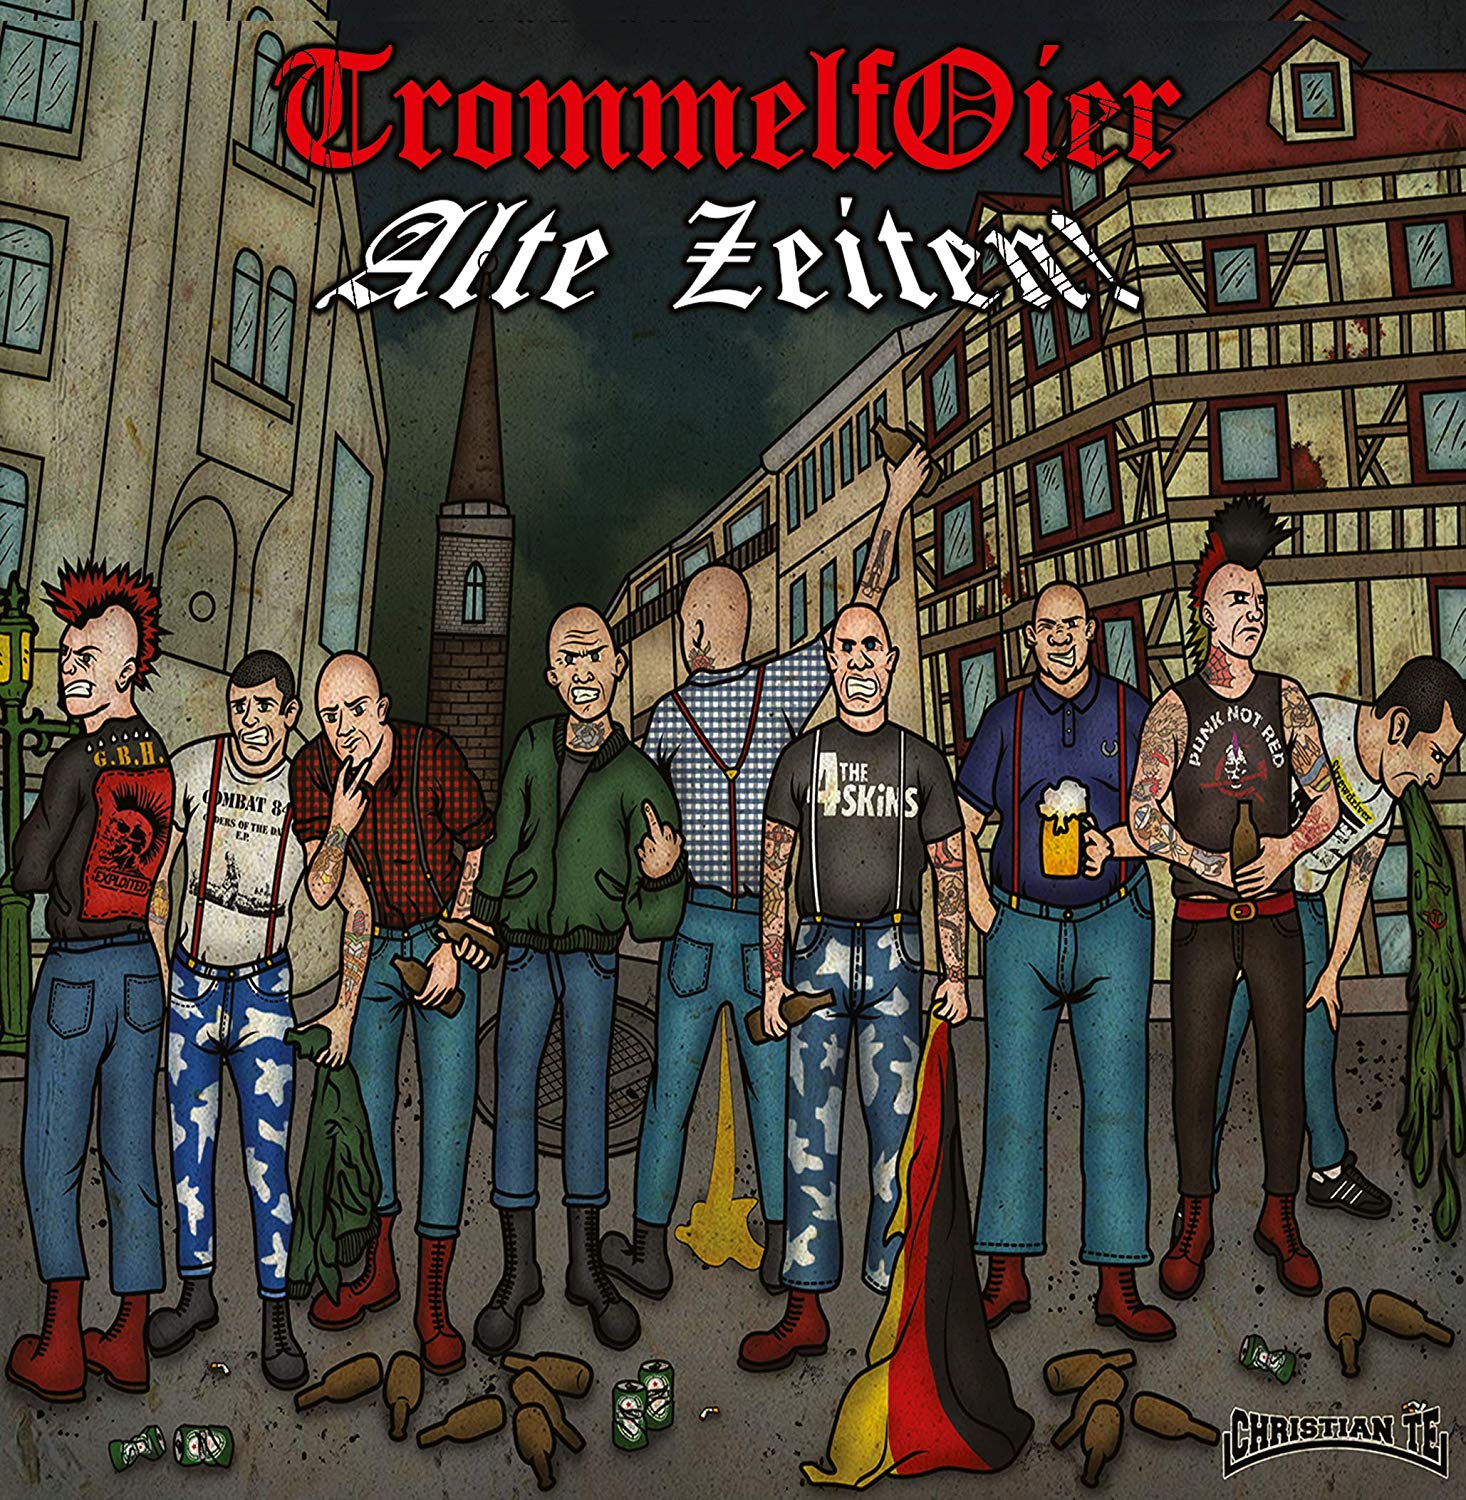 Trommelfoier - Alte Zeiten vinyl cover